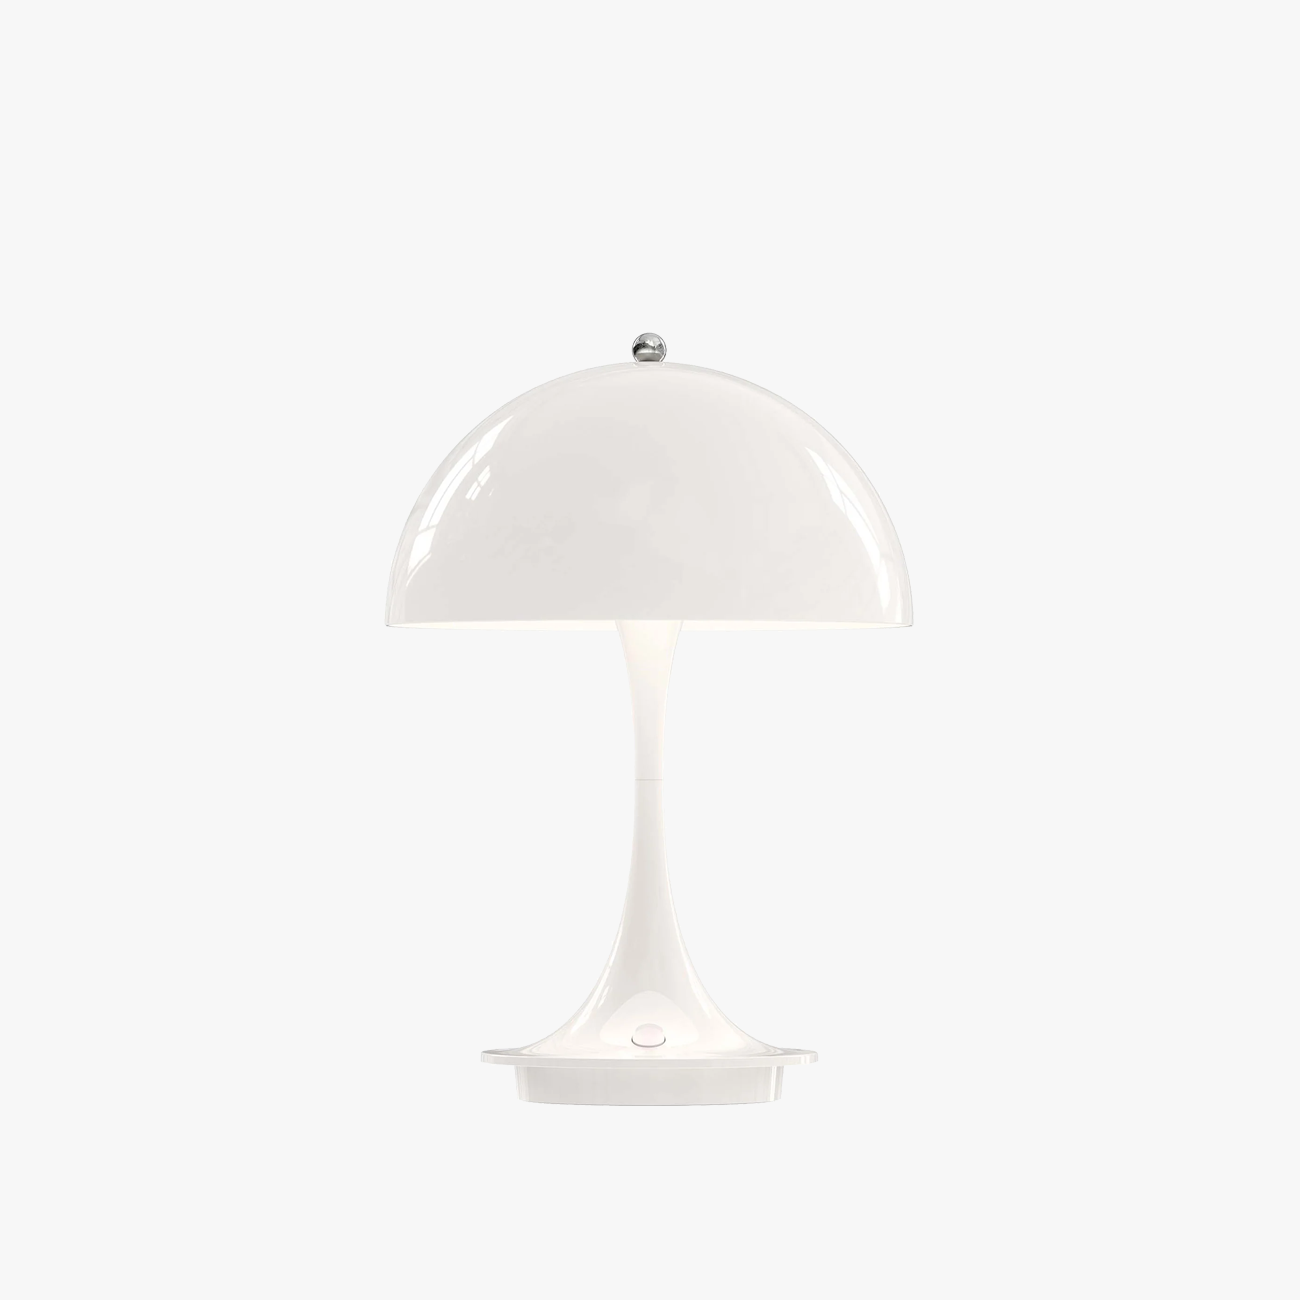 Estadini Portable Lamp